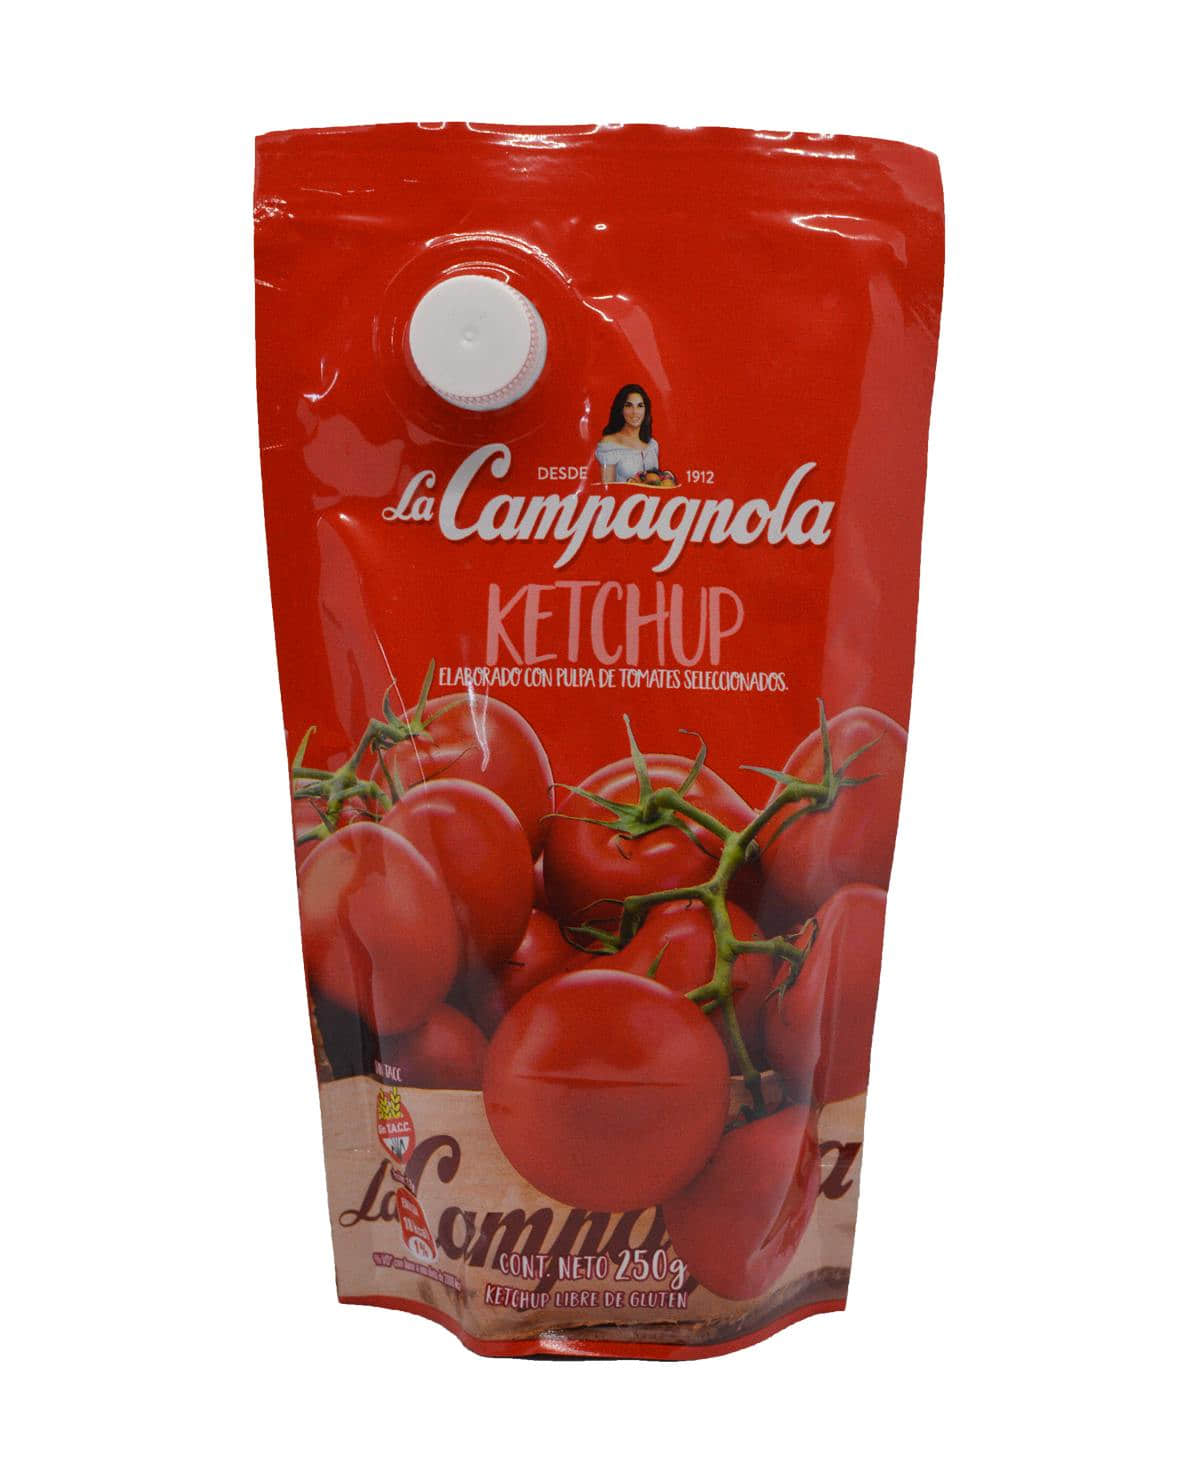 Ketchup La Campagnola 250 Gr